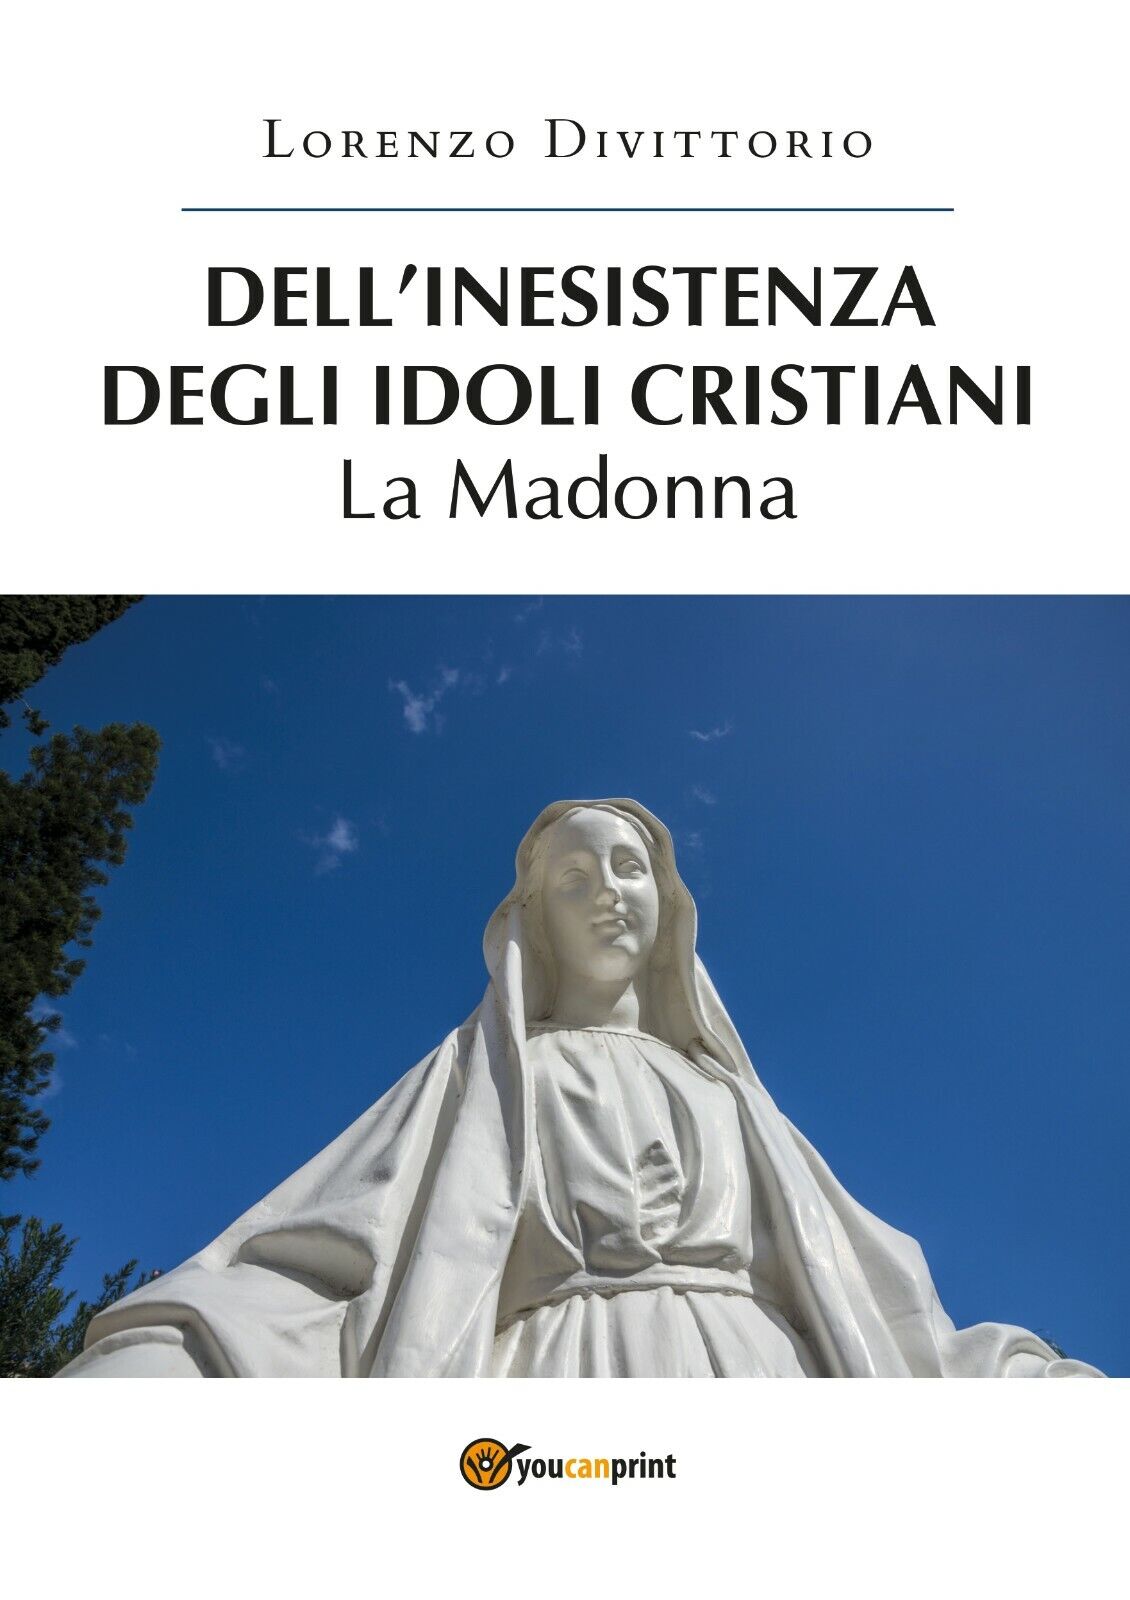 DelL'inesistenza degli idoli cristiani: la Madonna  di Lorenzo Divittorio,  2019